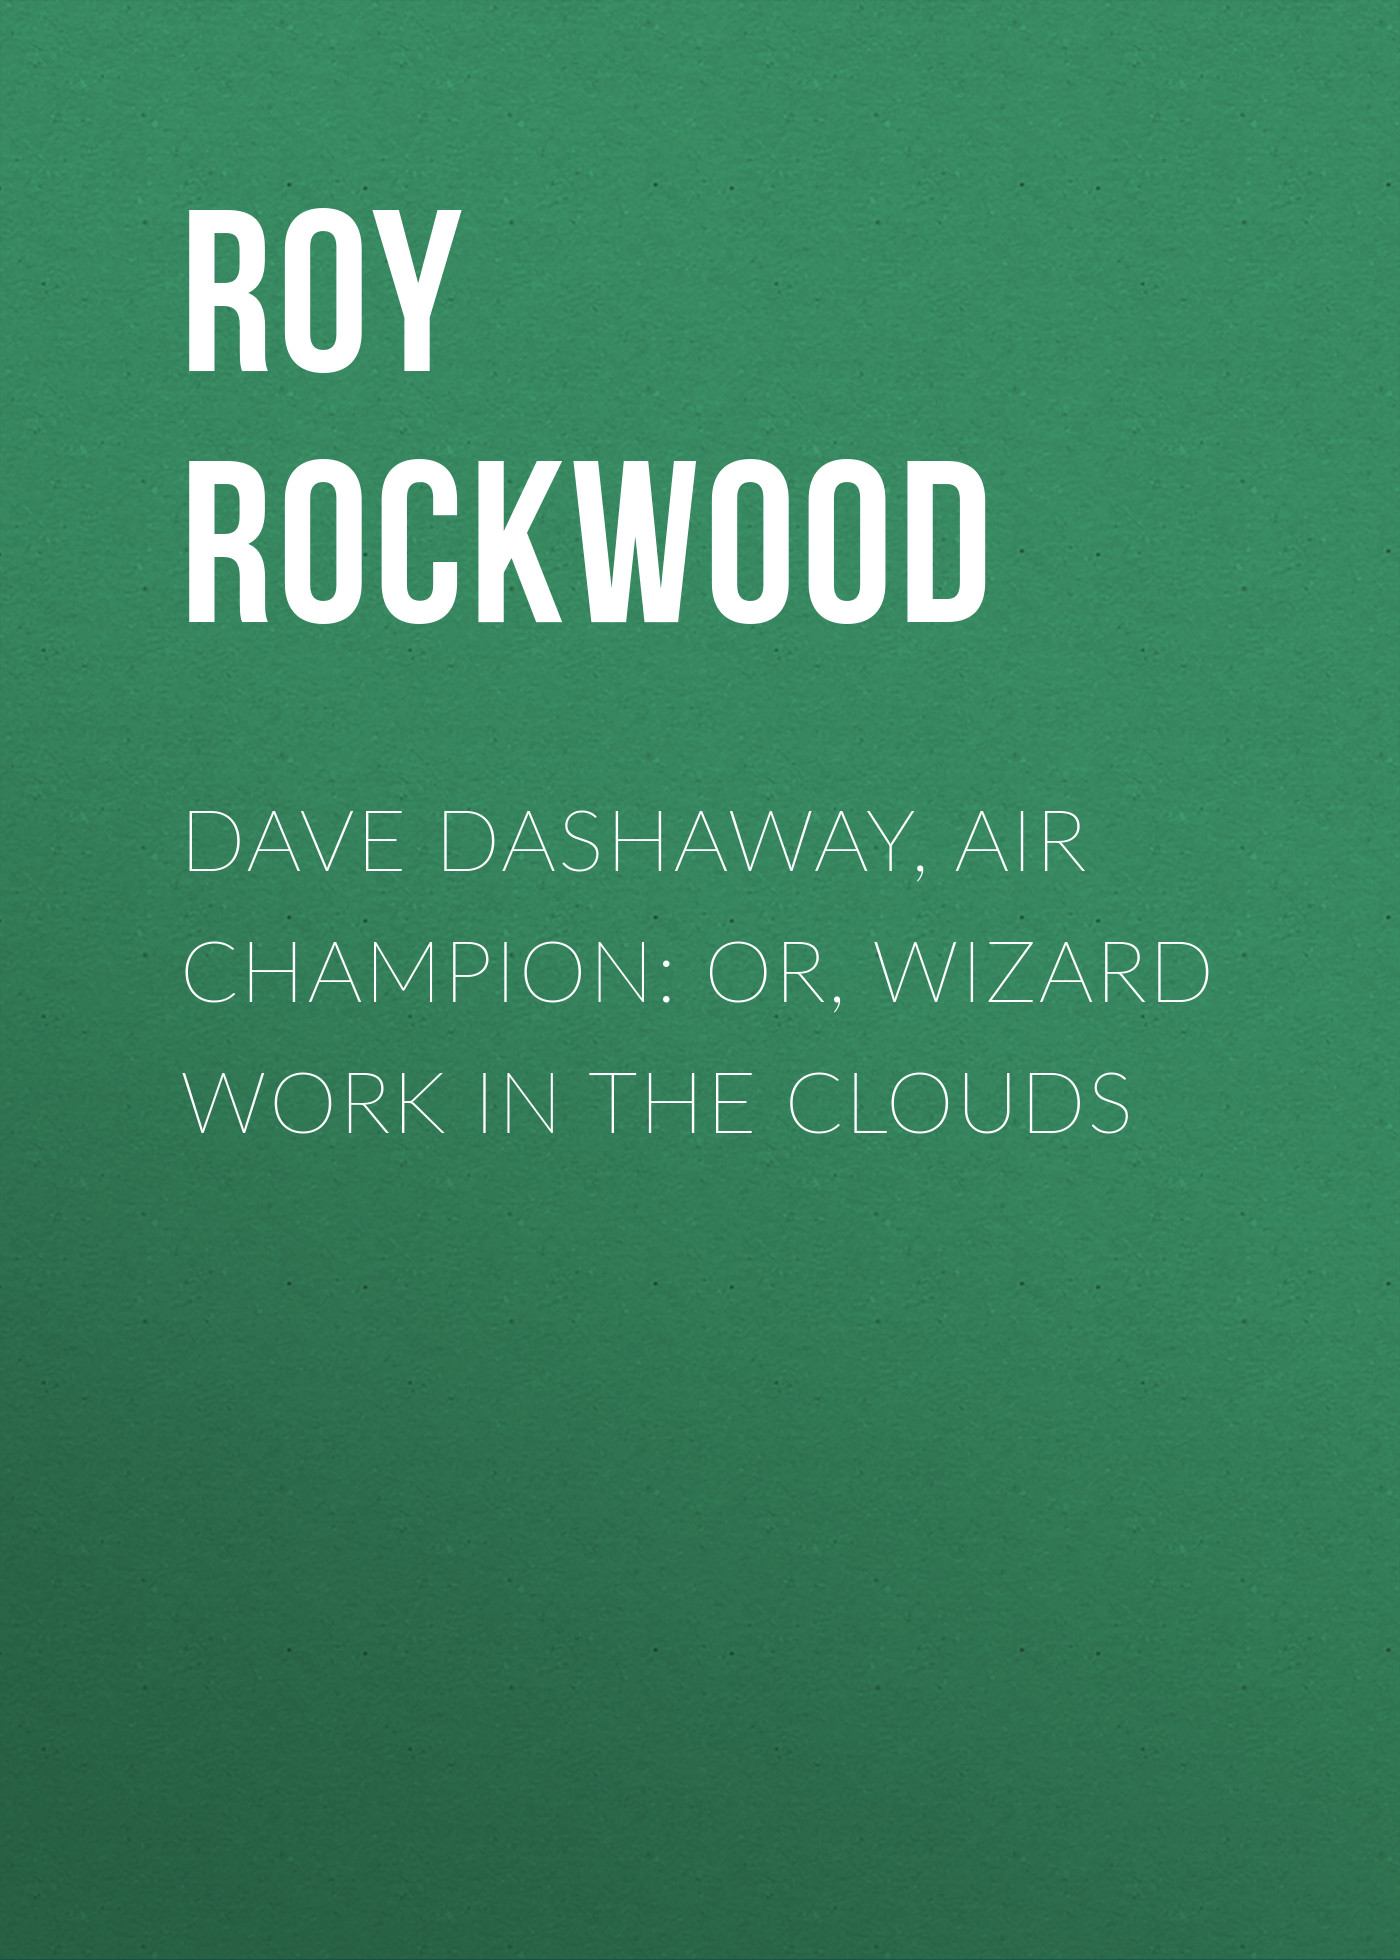 Книга Dave Dashaway, Air Champion: or, Wizard Work in the Clouds из серии , созданная Roy Rockwood, может относится к жанру Классические детективы, Зарубежные детективы, Зарубежная классика. Стоимость электронной книги Dave Dashaway, Air Champion: or, Wizard Work in the Clouds с идентификатором 23148427 составляет 5.99 руб.